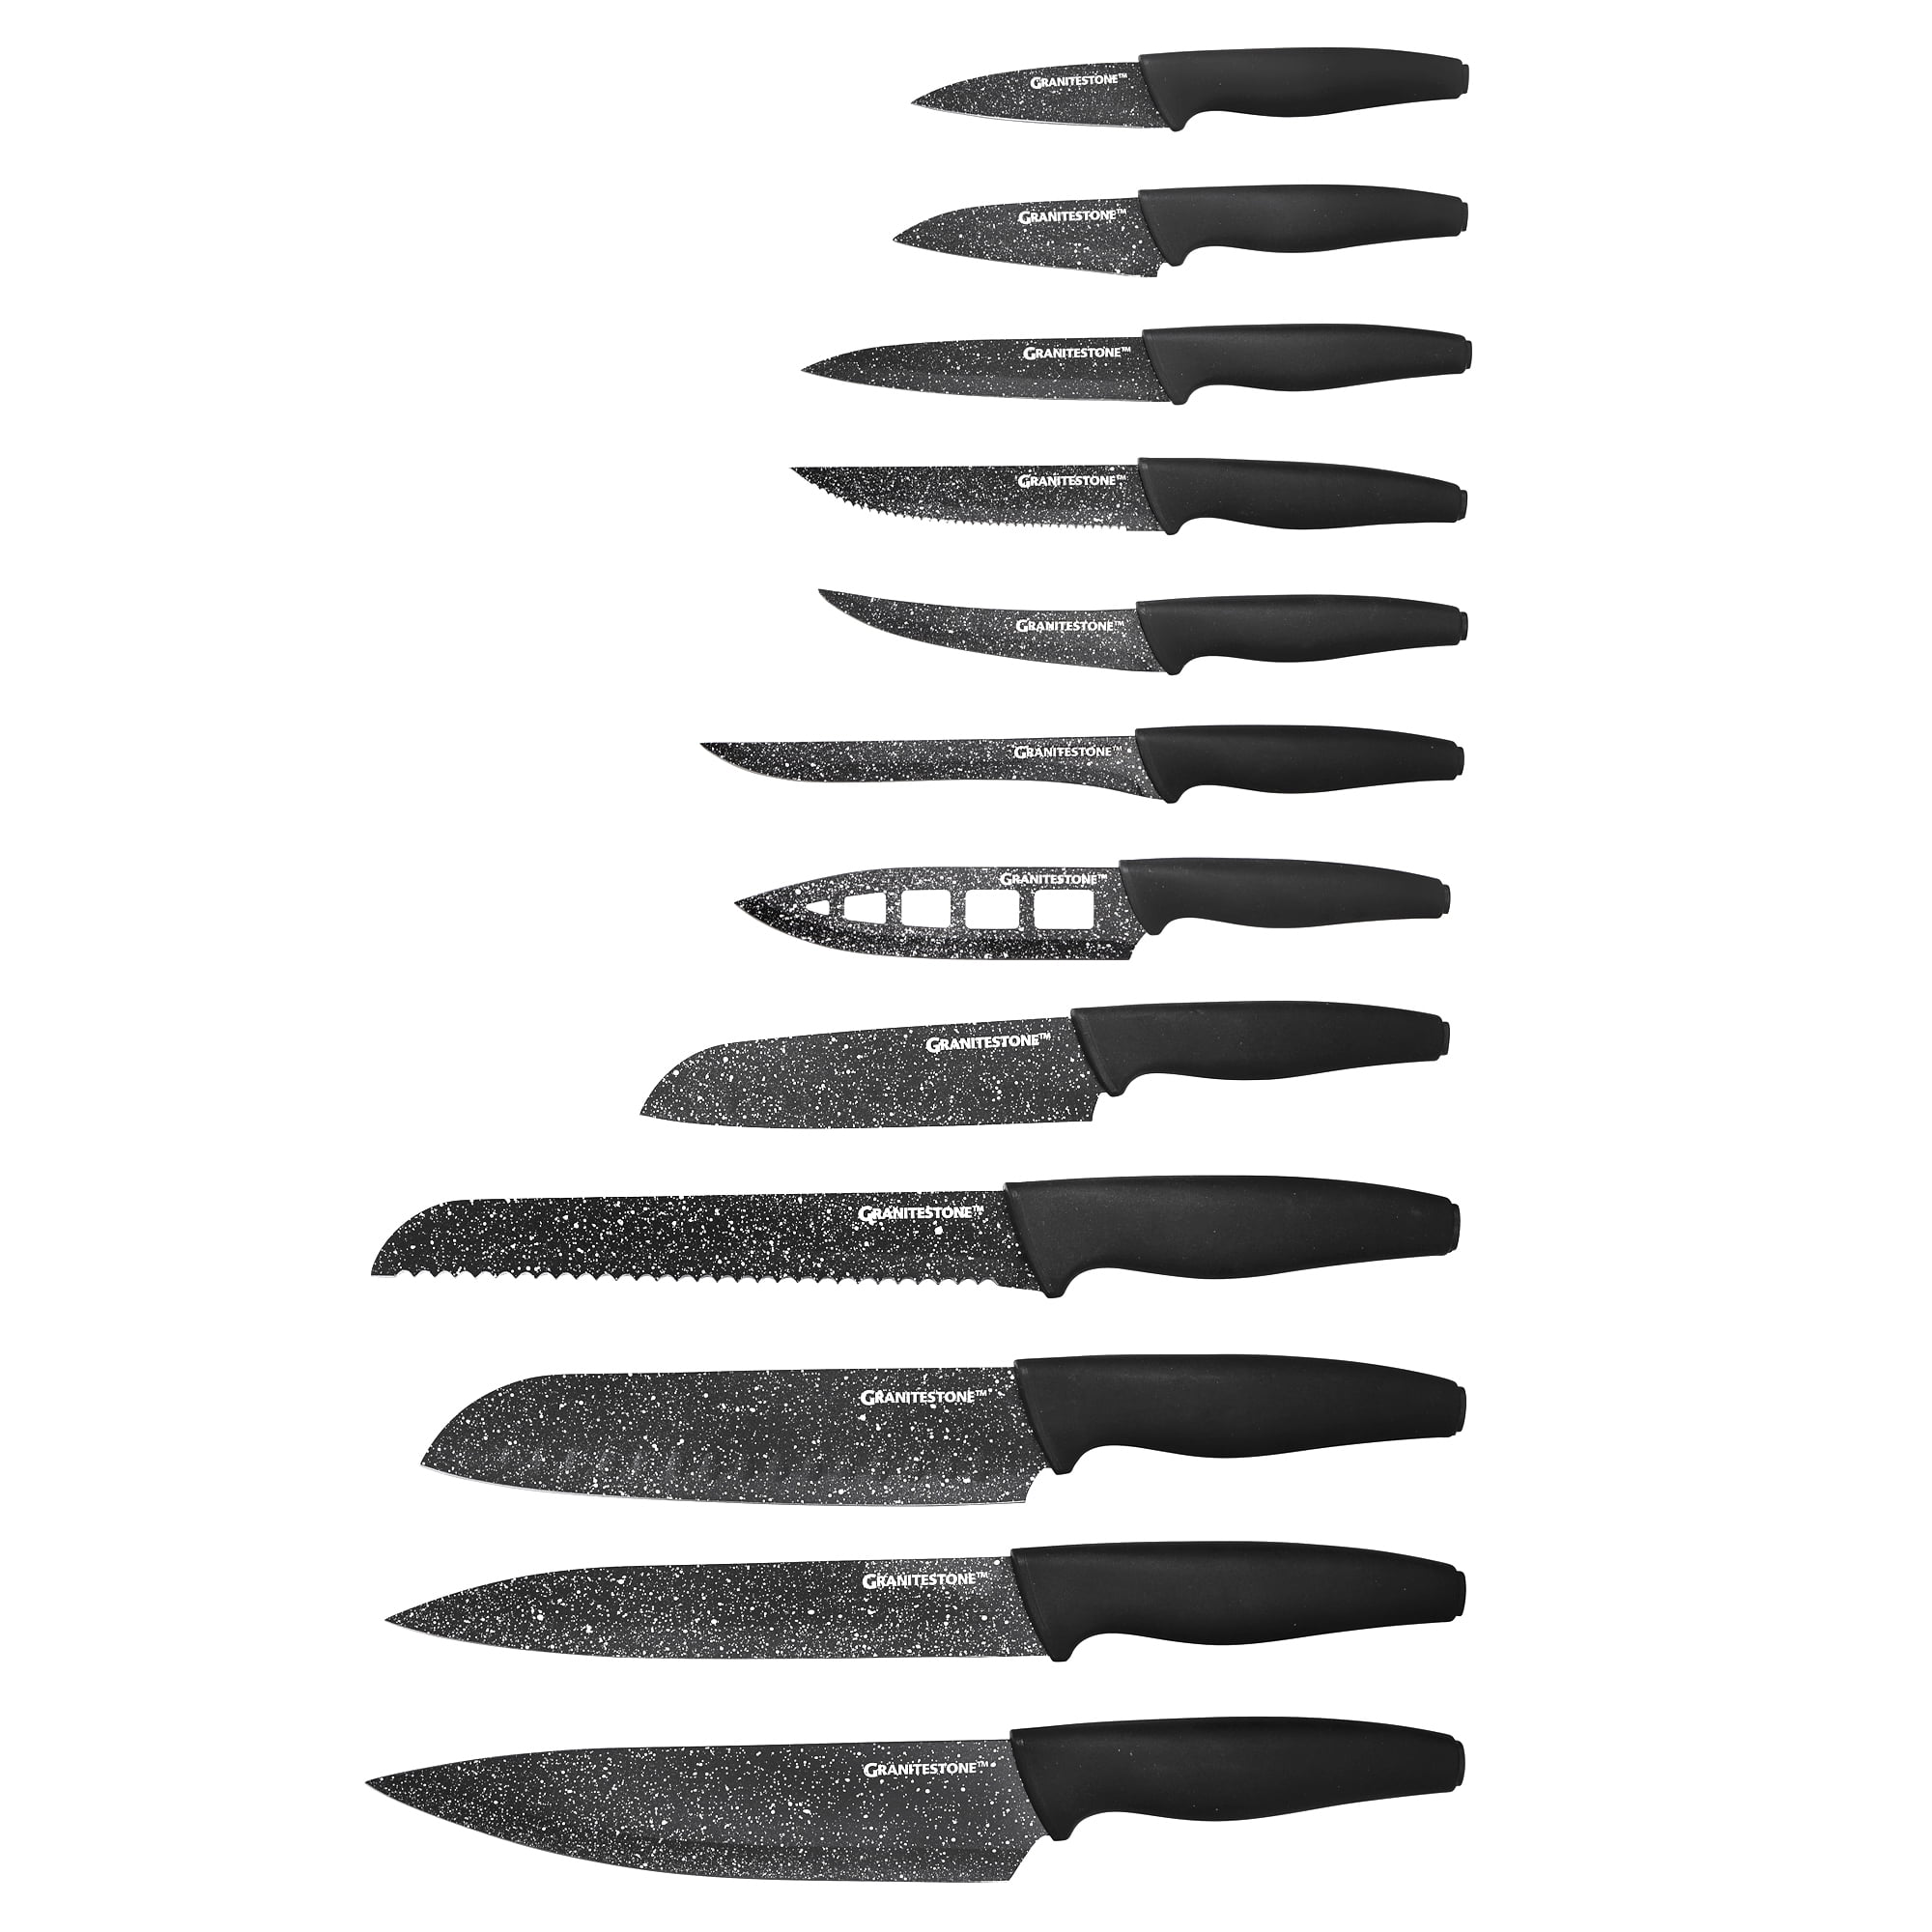 nutra blade knives｜TikTok Search